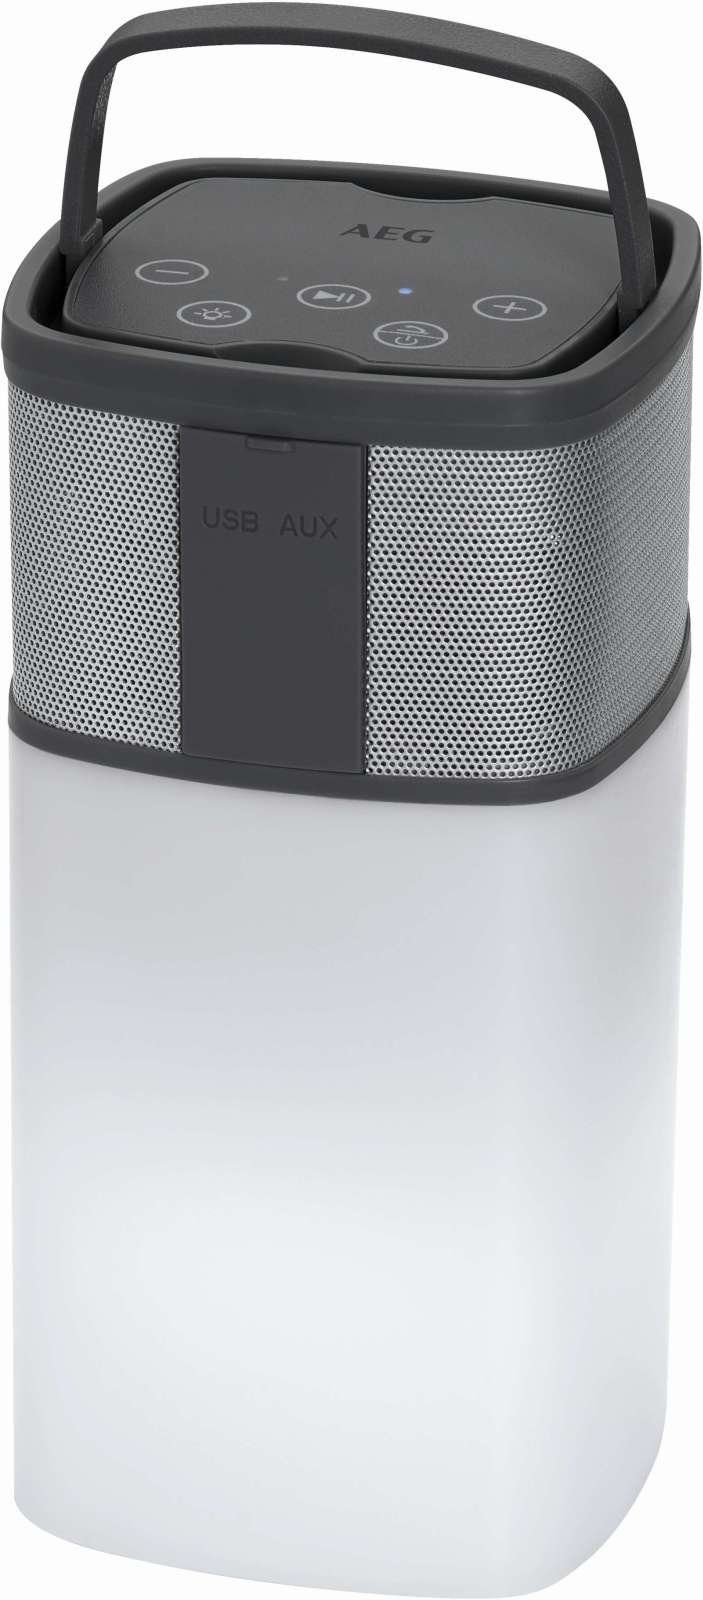 Lautsprecher Bluetooth-Lautsprecher 4841 weiß AEG BSS AEG Soundsystem Powerbank